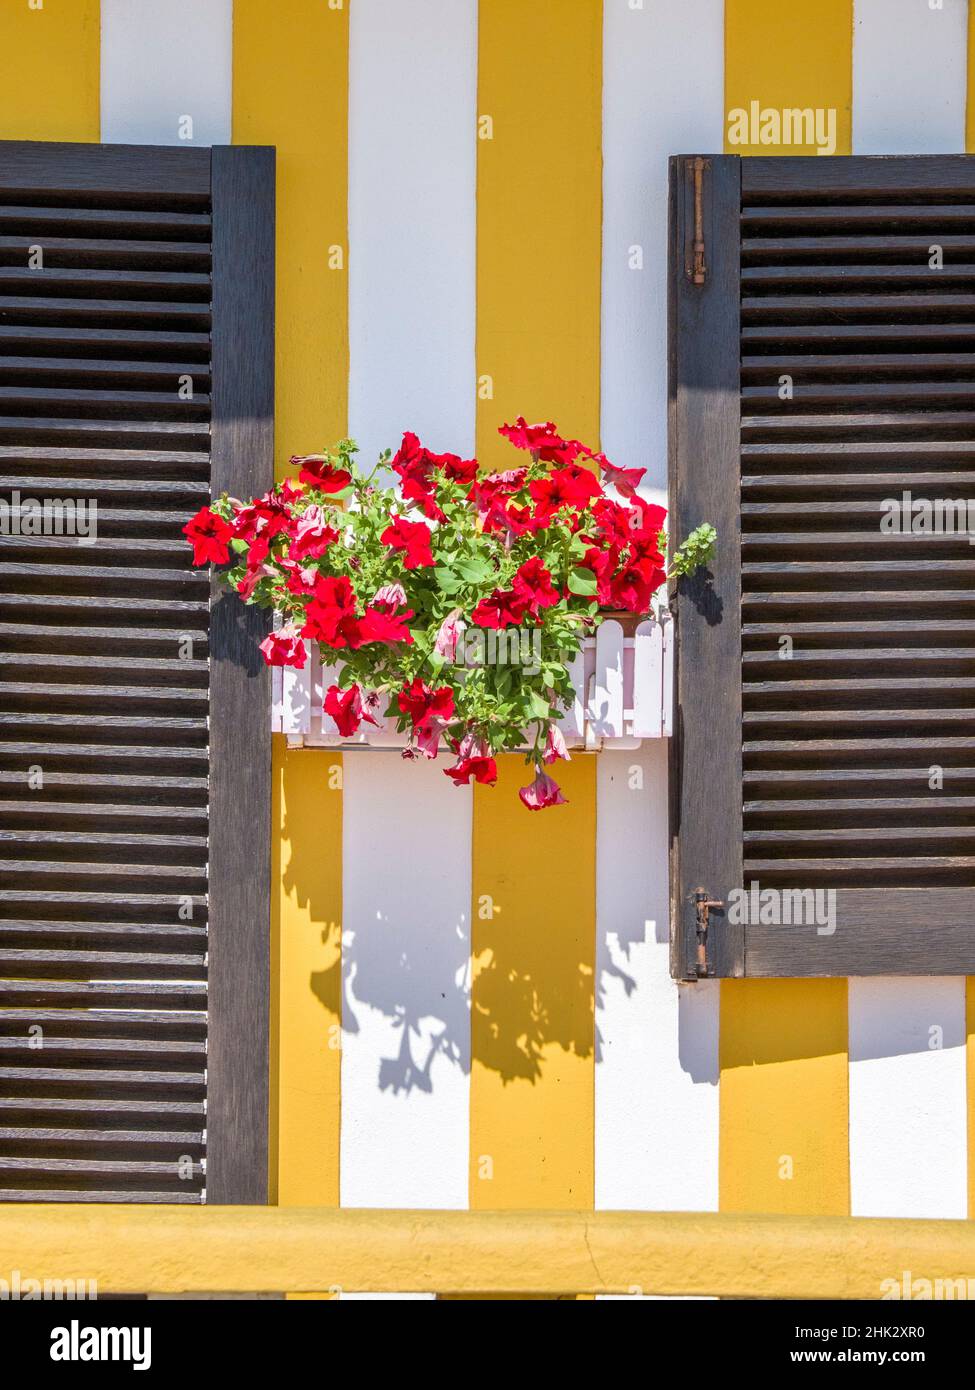 Portugal, Costa Nova.Chalets de vacances colorés dans le village côtier de la plage Costa Nova près de la ville d'Aveiro. Banque D'Images